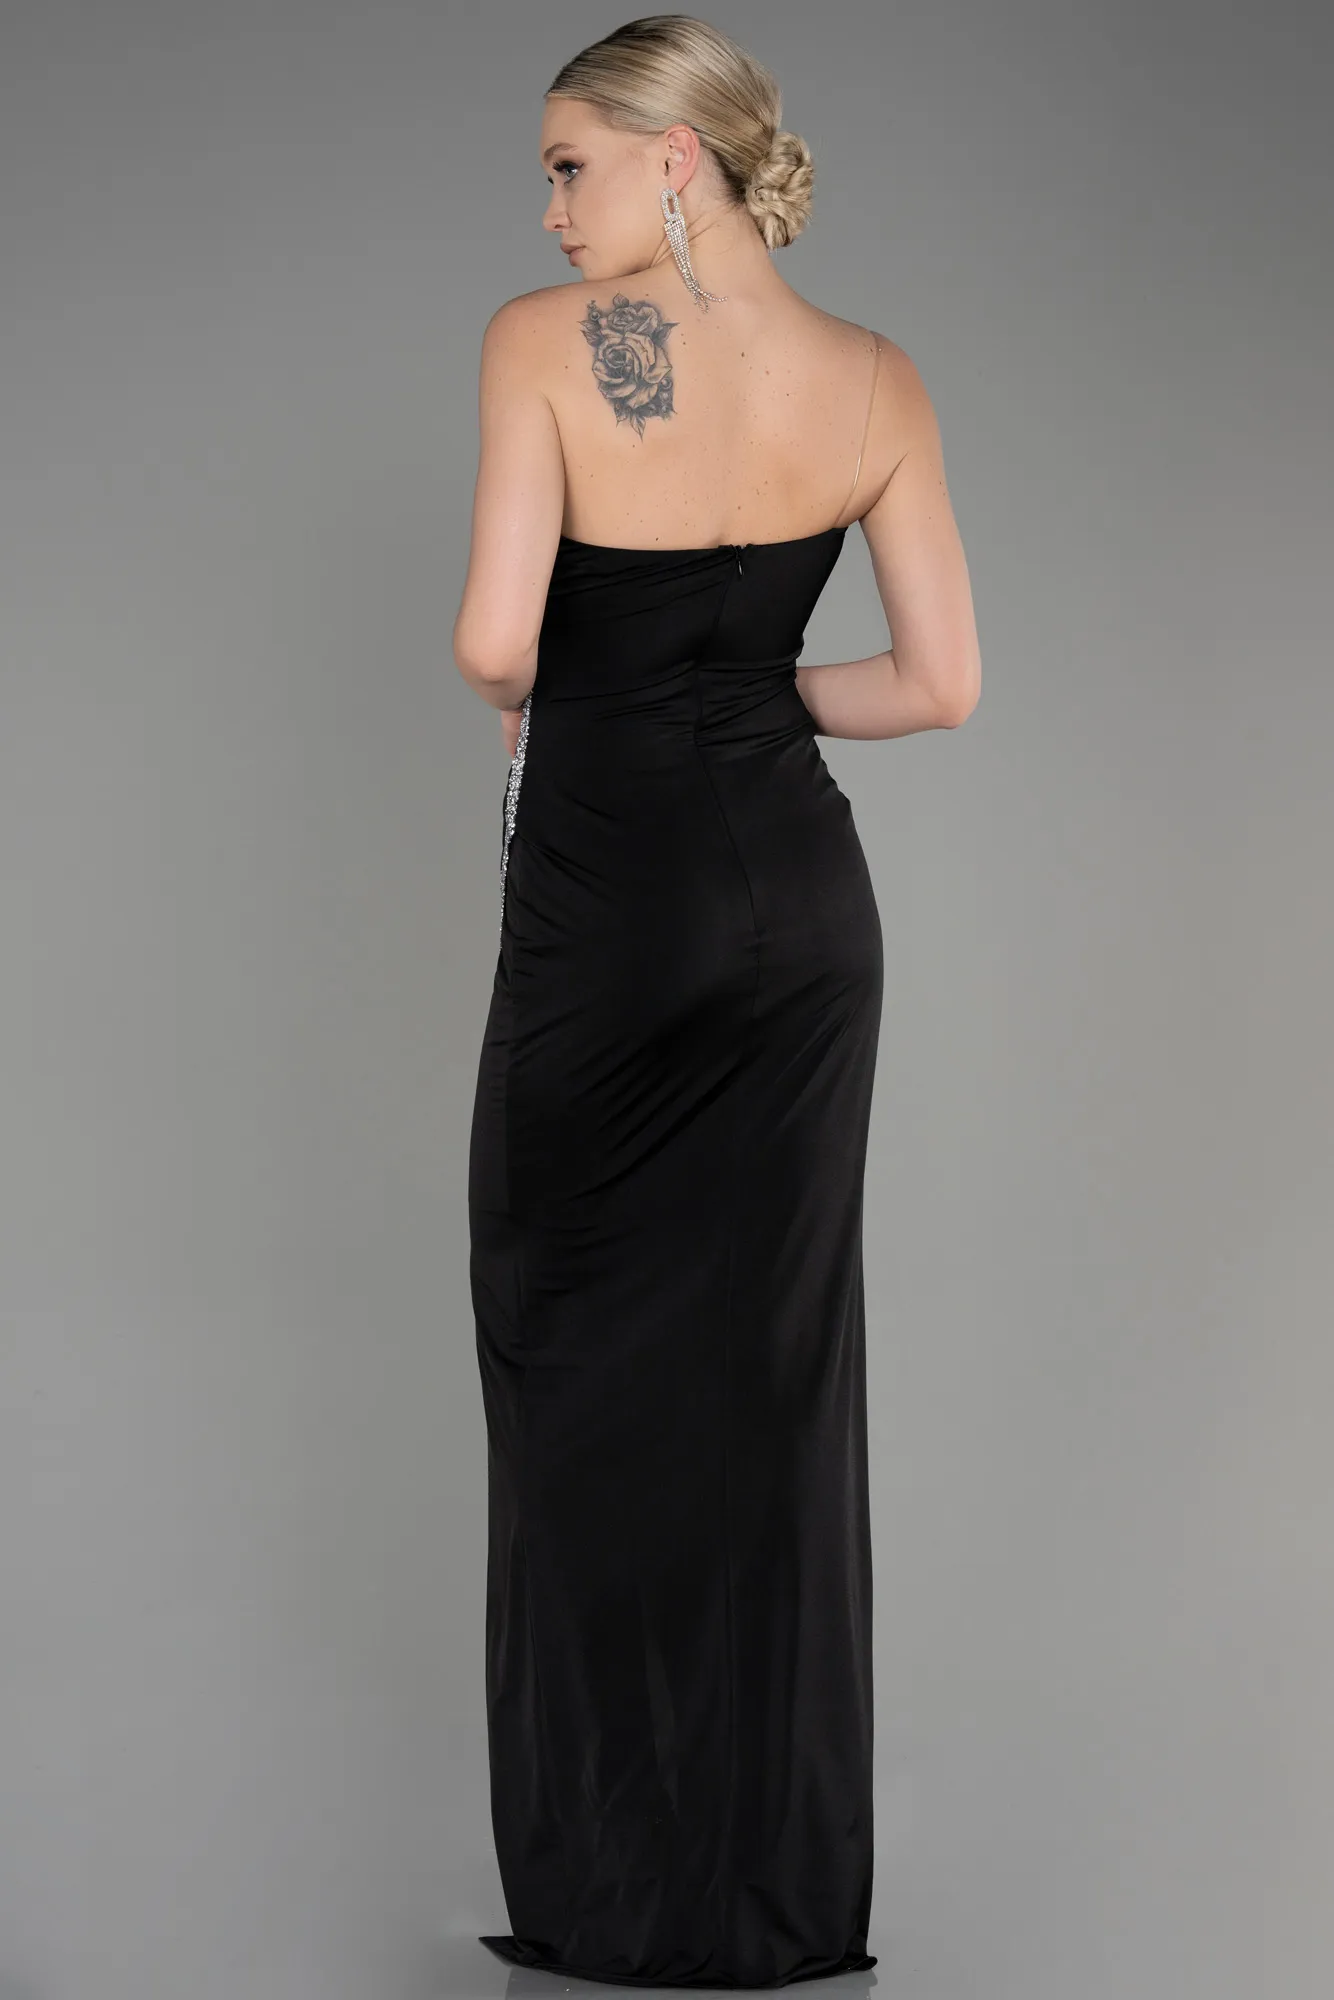 Black-Long Evening Dress ABU3764